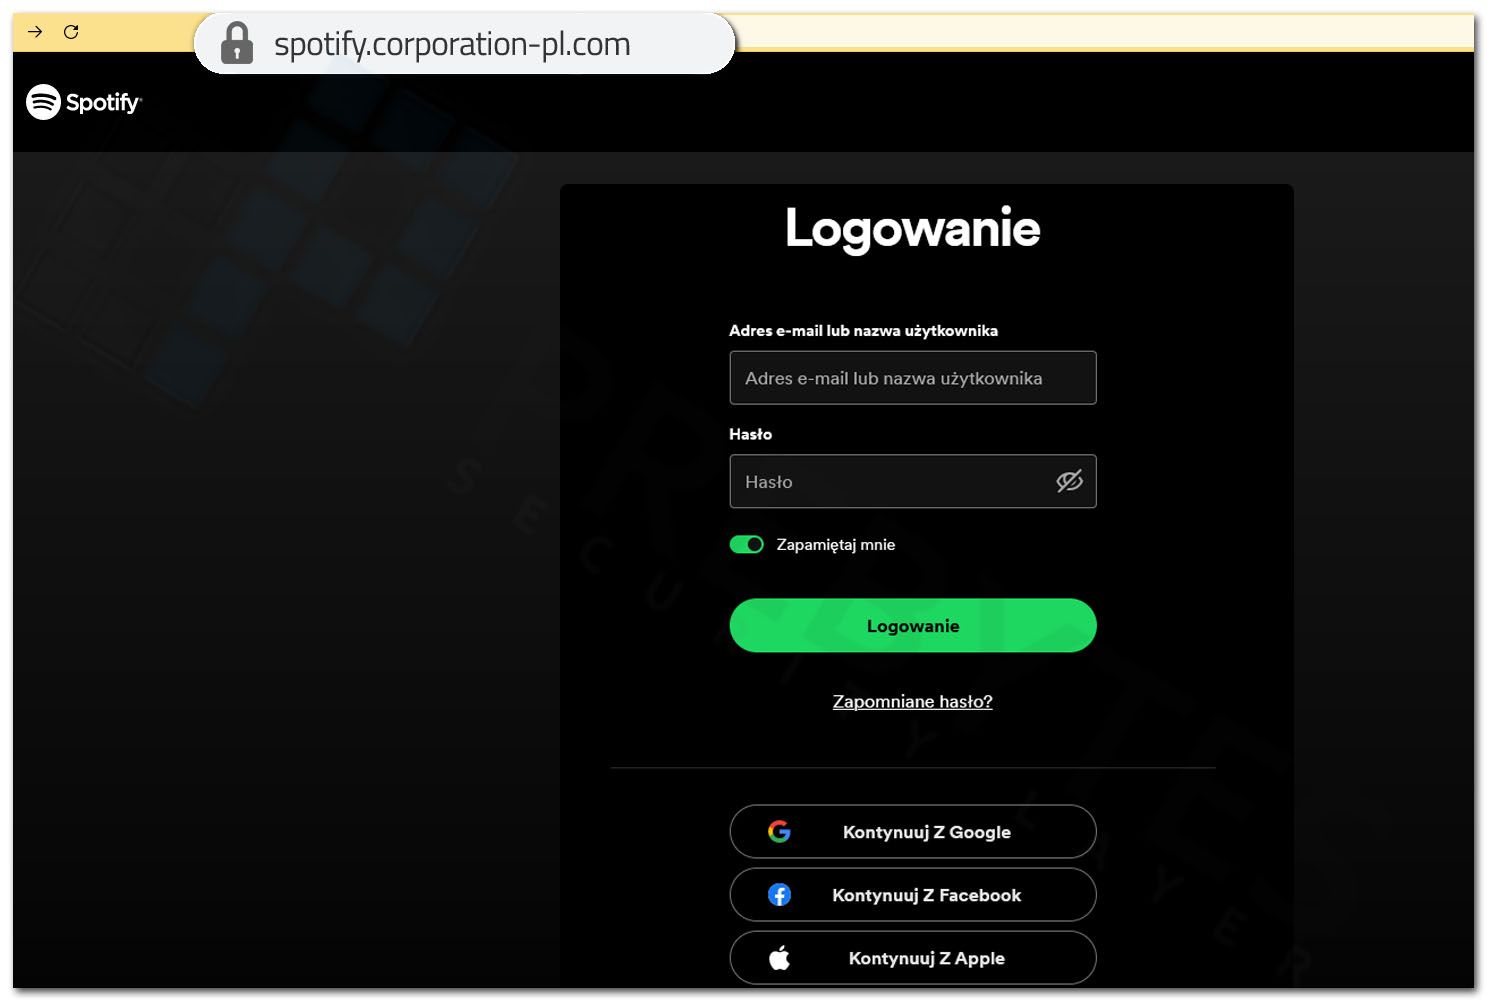 Strona phishing Spotify - logowanie